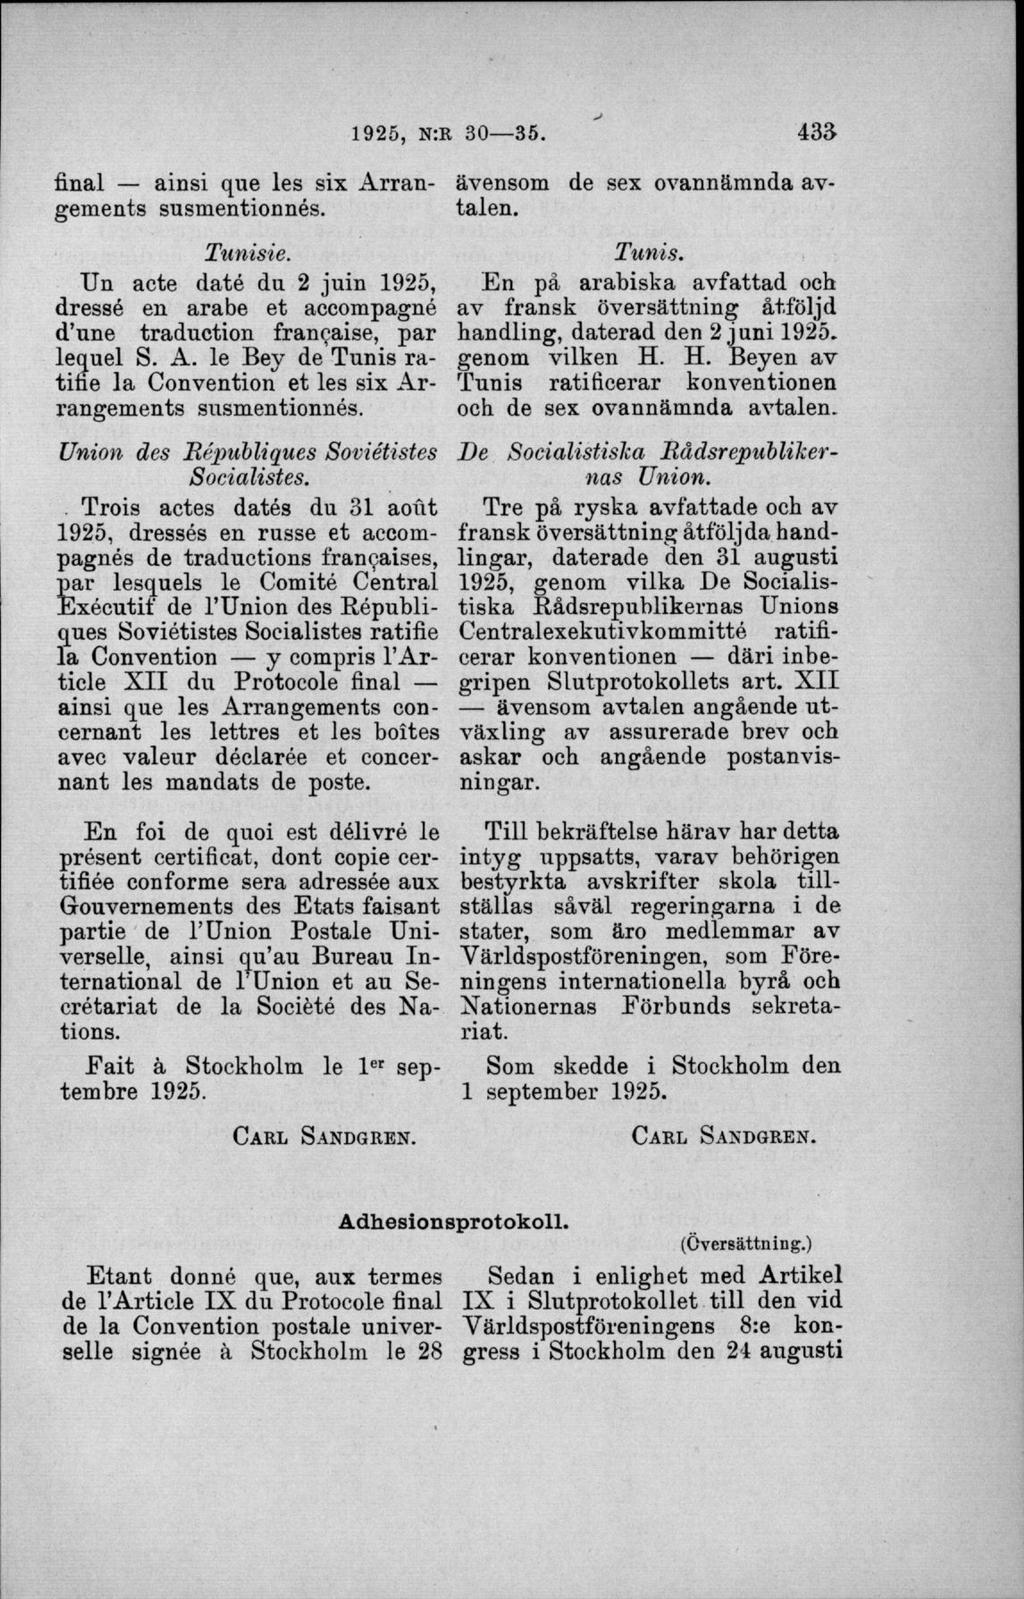 final ainsi que les six Arrangements susmentionnés. Tunisie. Un aete daté du 2 juin 1925, dressé en arabe et accompagné d une traduetion francaise, par lequel S. A. le Bey de Tunis ratifie la Convention et les six Arrangements susmentionnés.